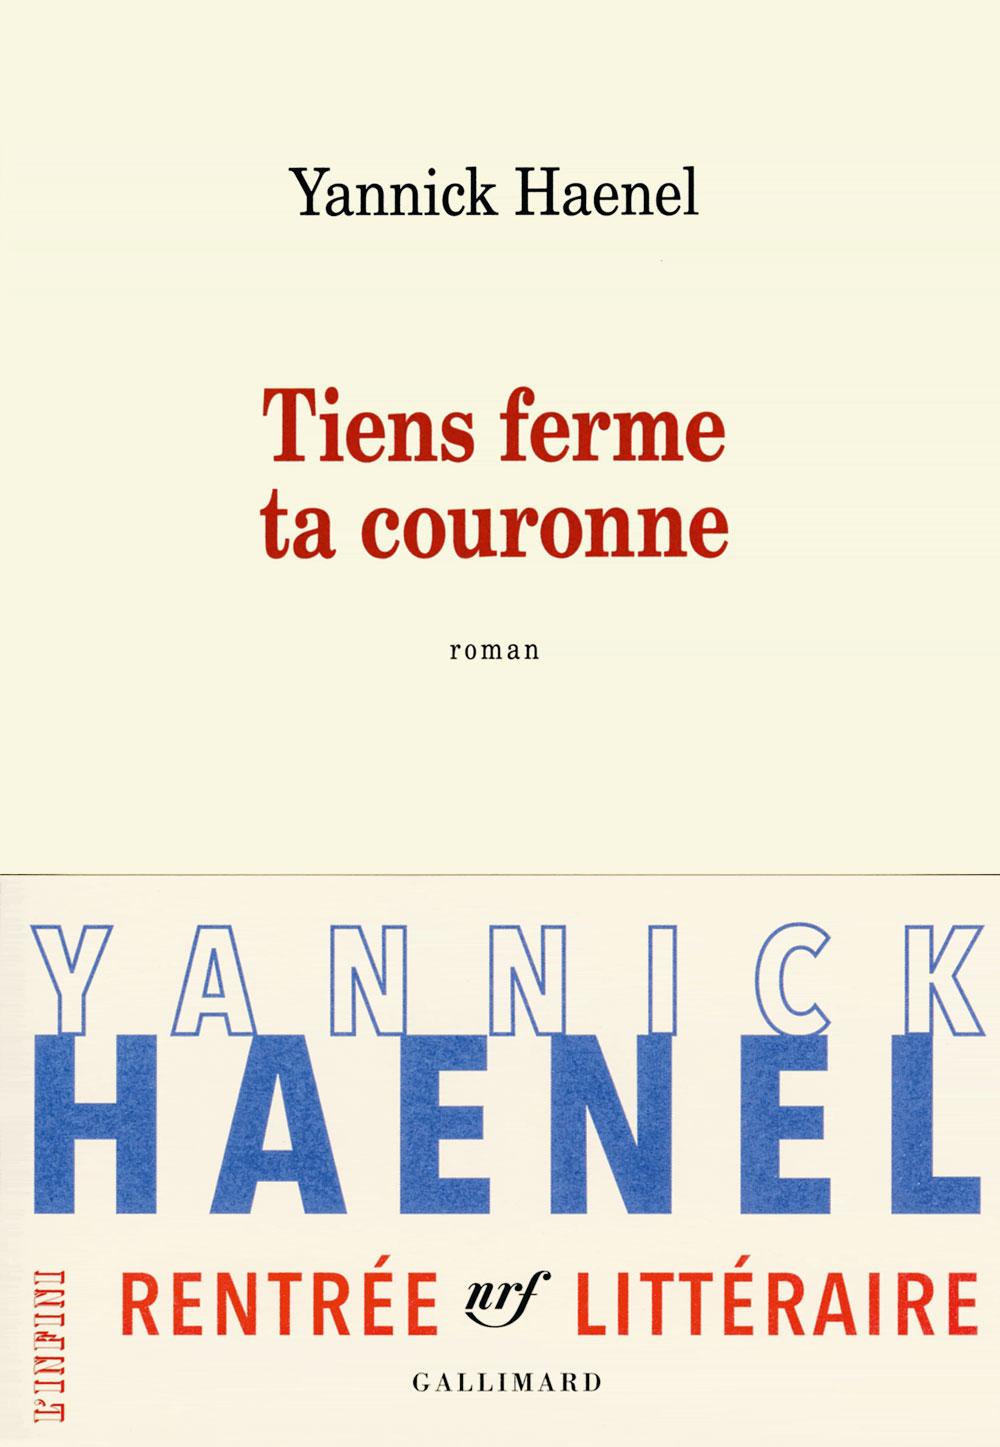 [Le livre de la semaine] Tiens ferme ta couronne, de Yannick Haenel